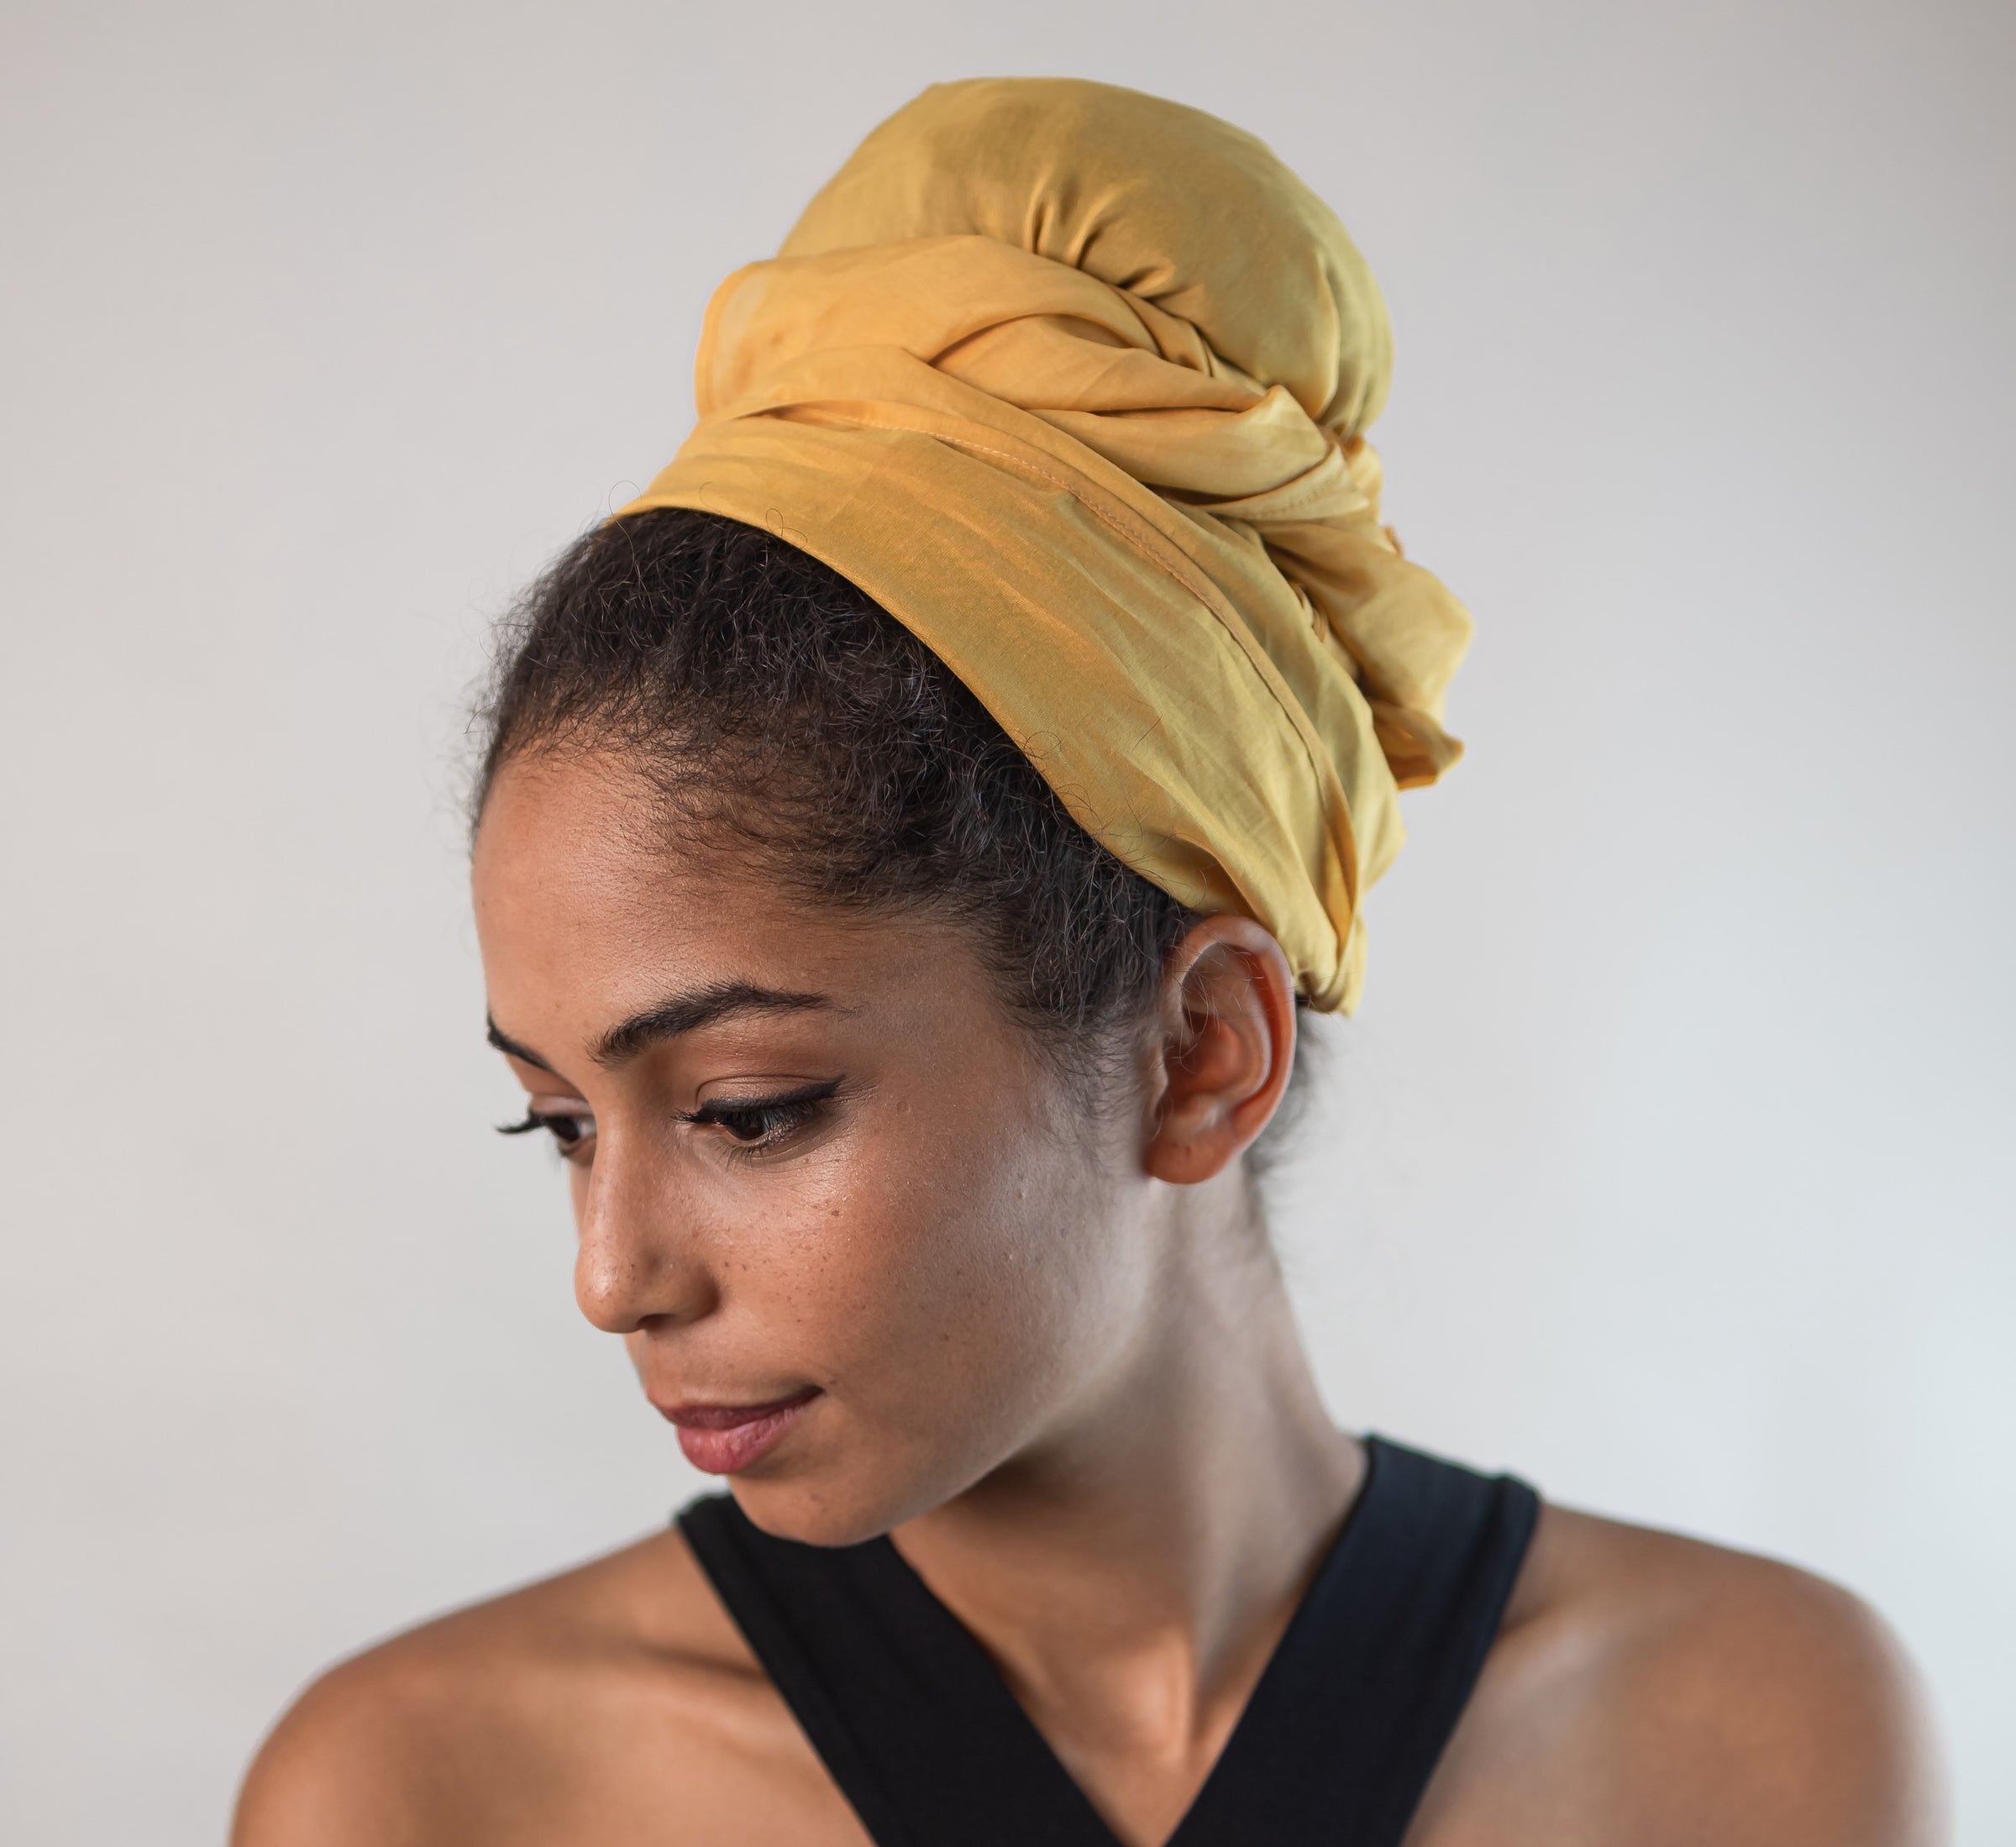 Eine junge hübsche Frau mit naturkrausen Haaren trägt ein Kopftuch aus gelber Baumwollseide und schaut verträumt zur Seite